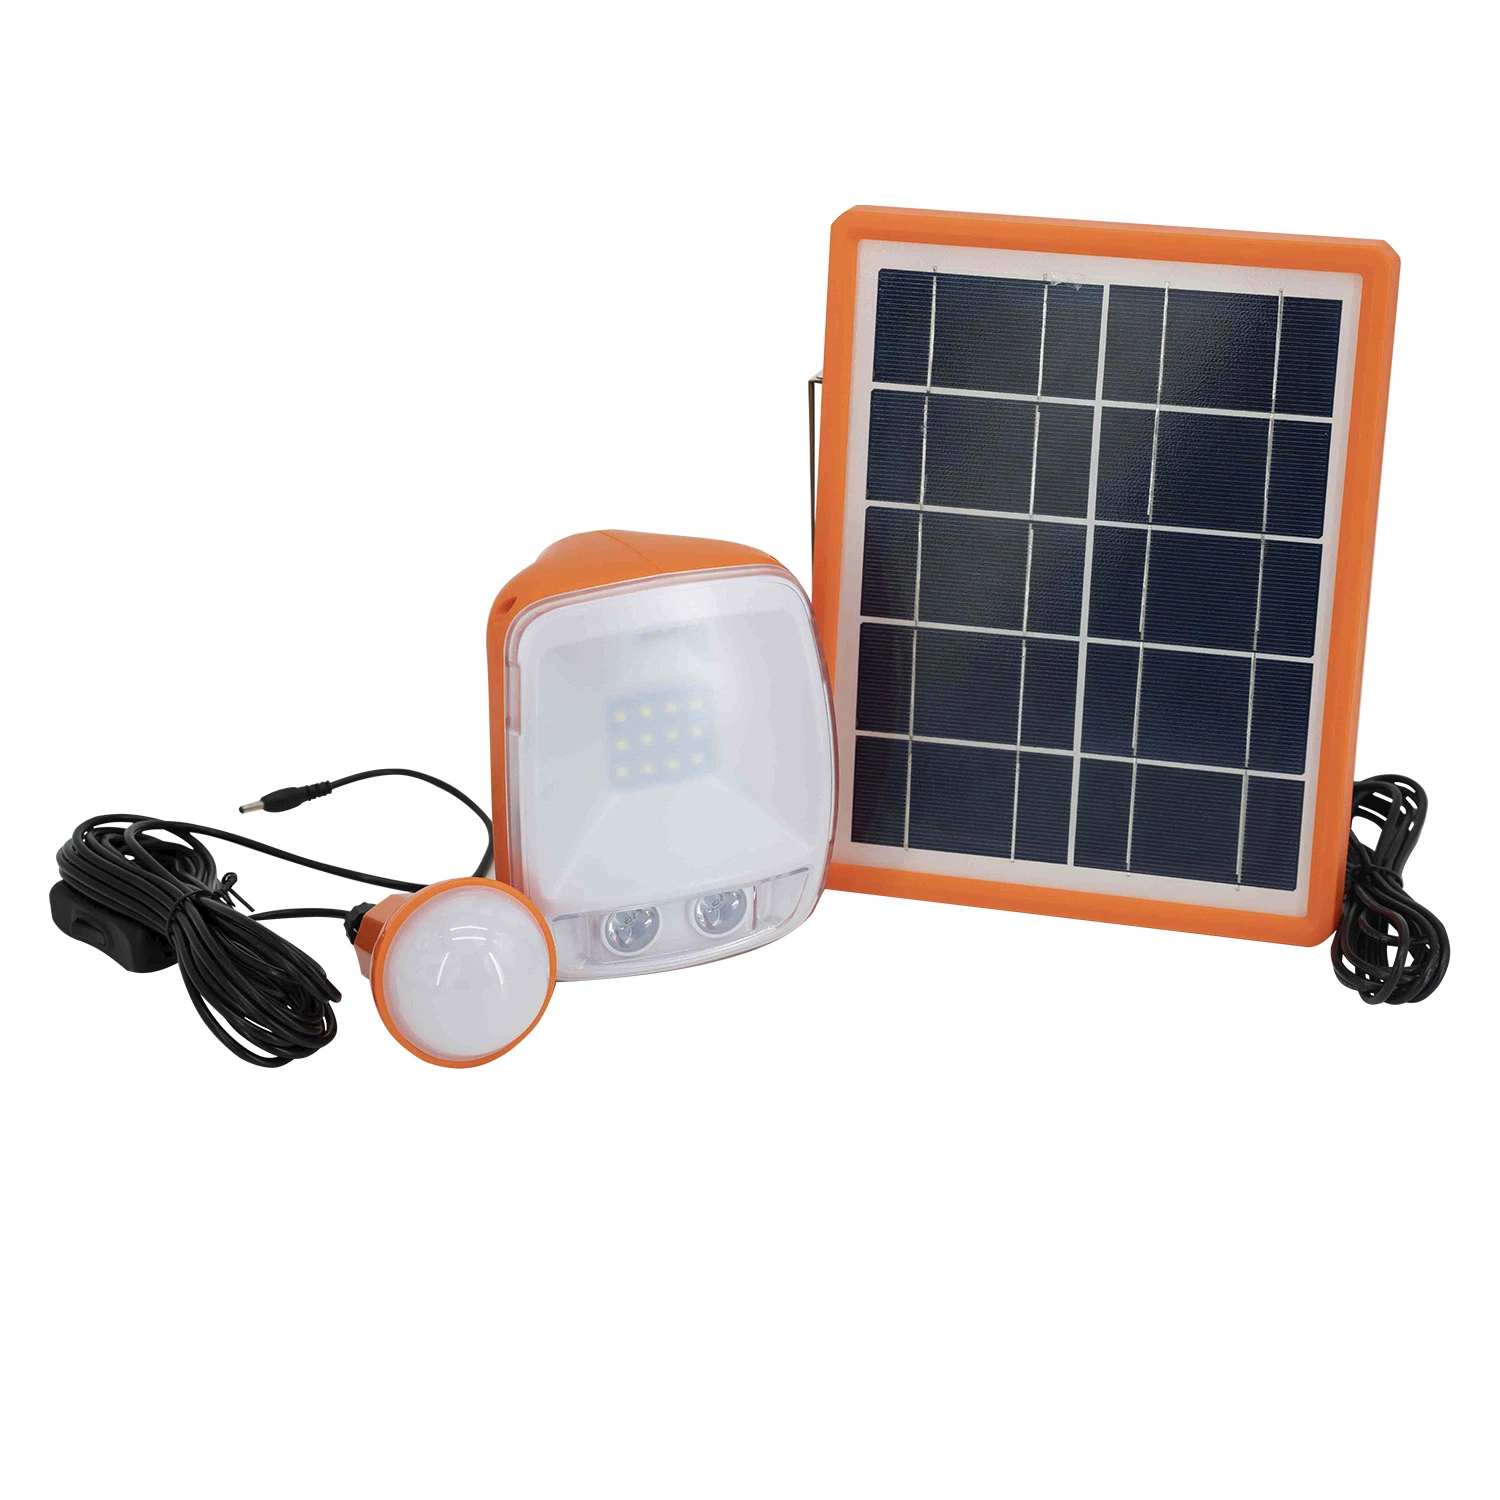 Lanterna solar pequena portátil para utilização doméstica (carregador móvel/lanterna)